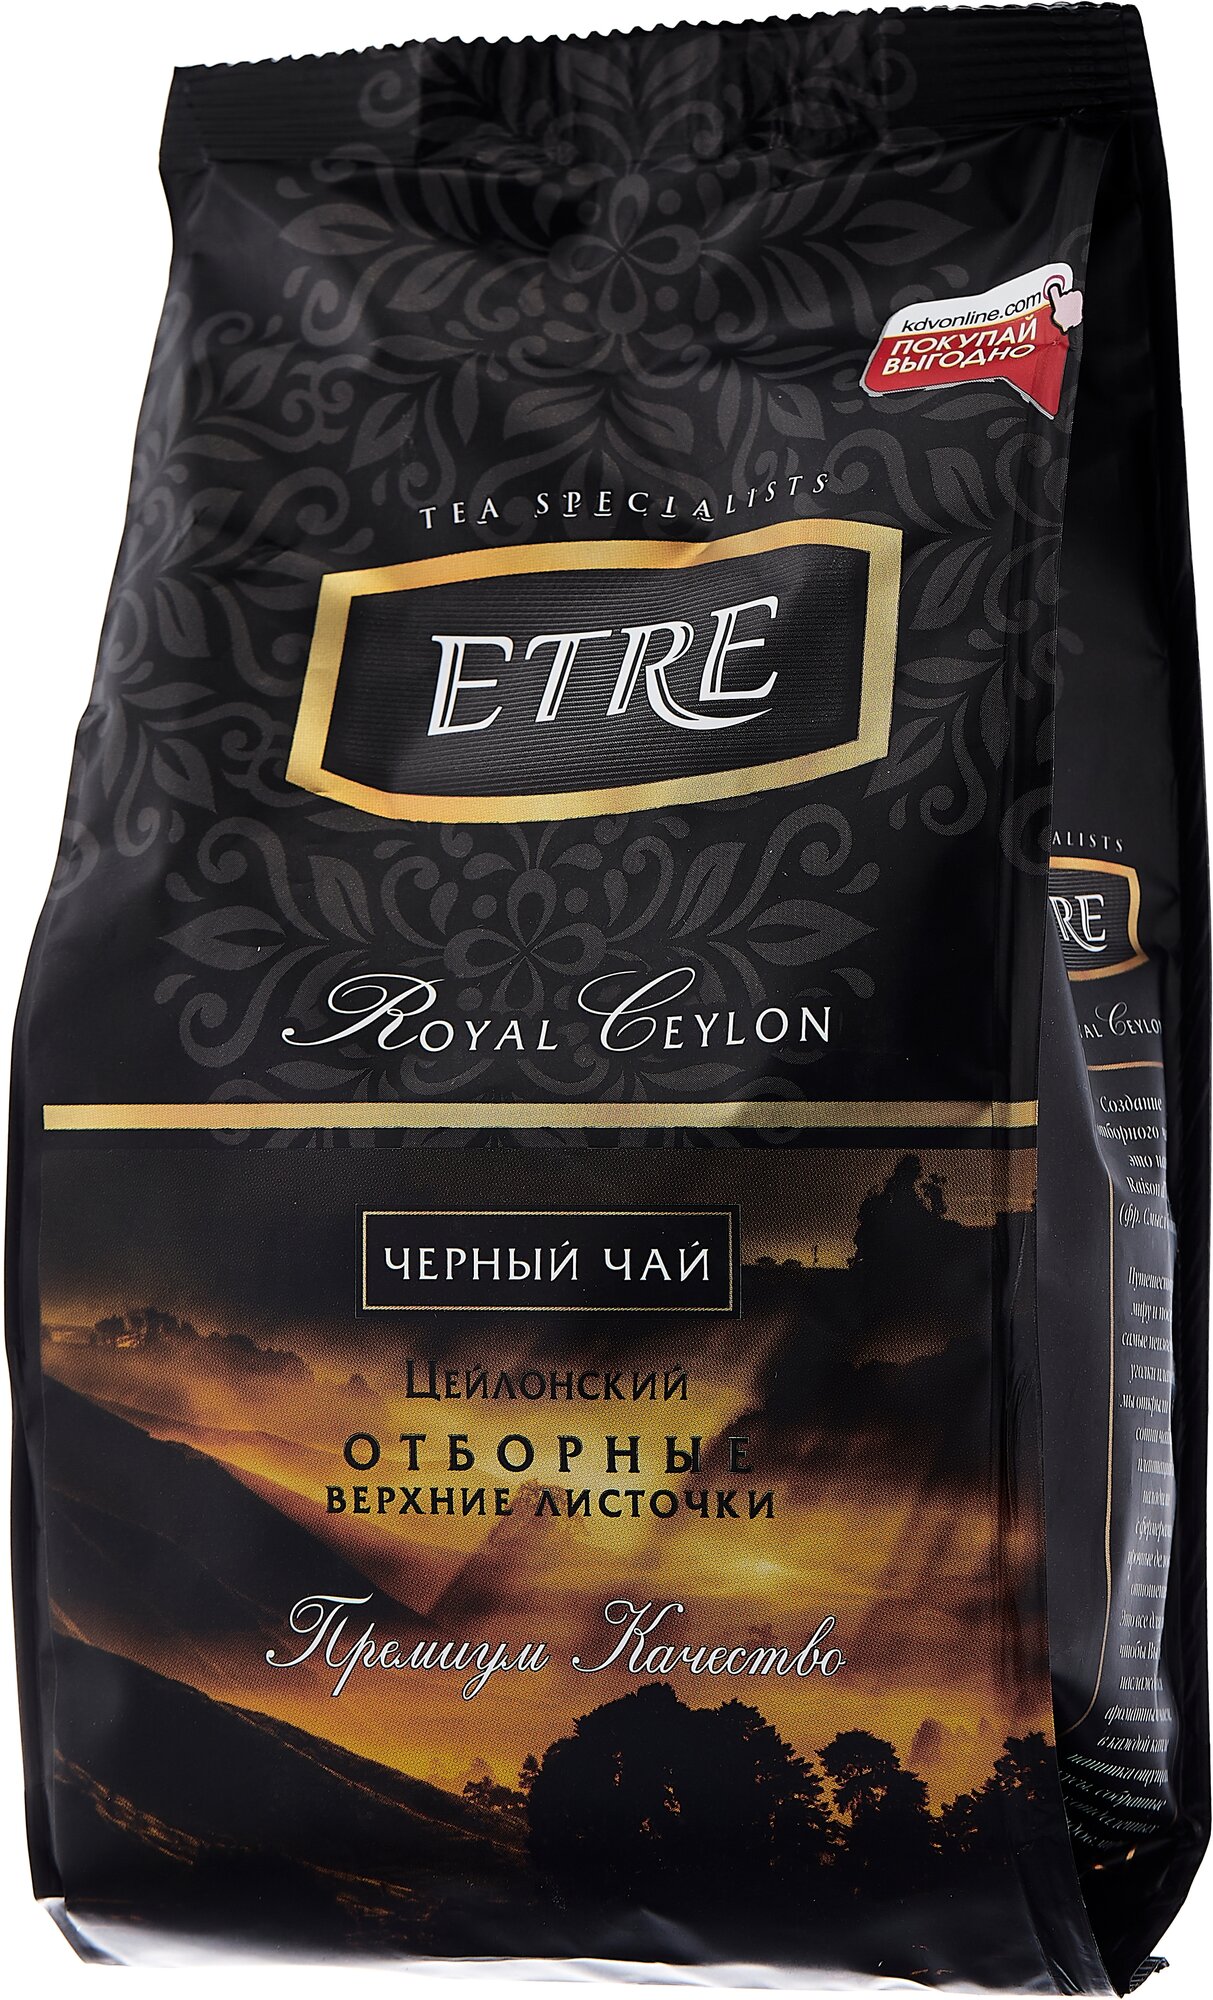 «ETRE», чай Royal Ceylon черный цейлонский отборный крупнолистовой, 200 г